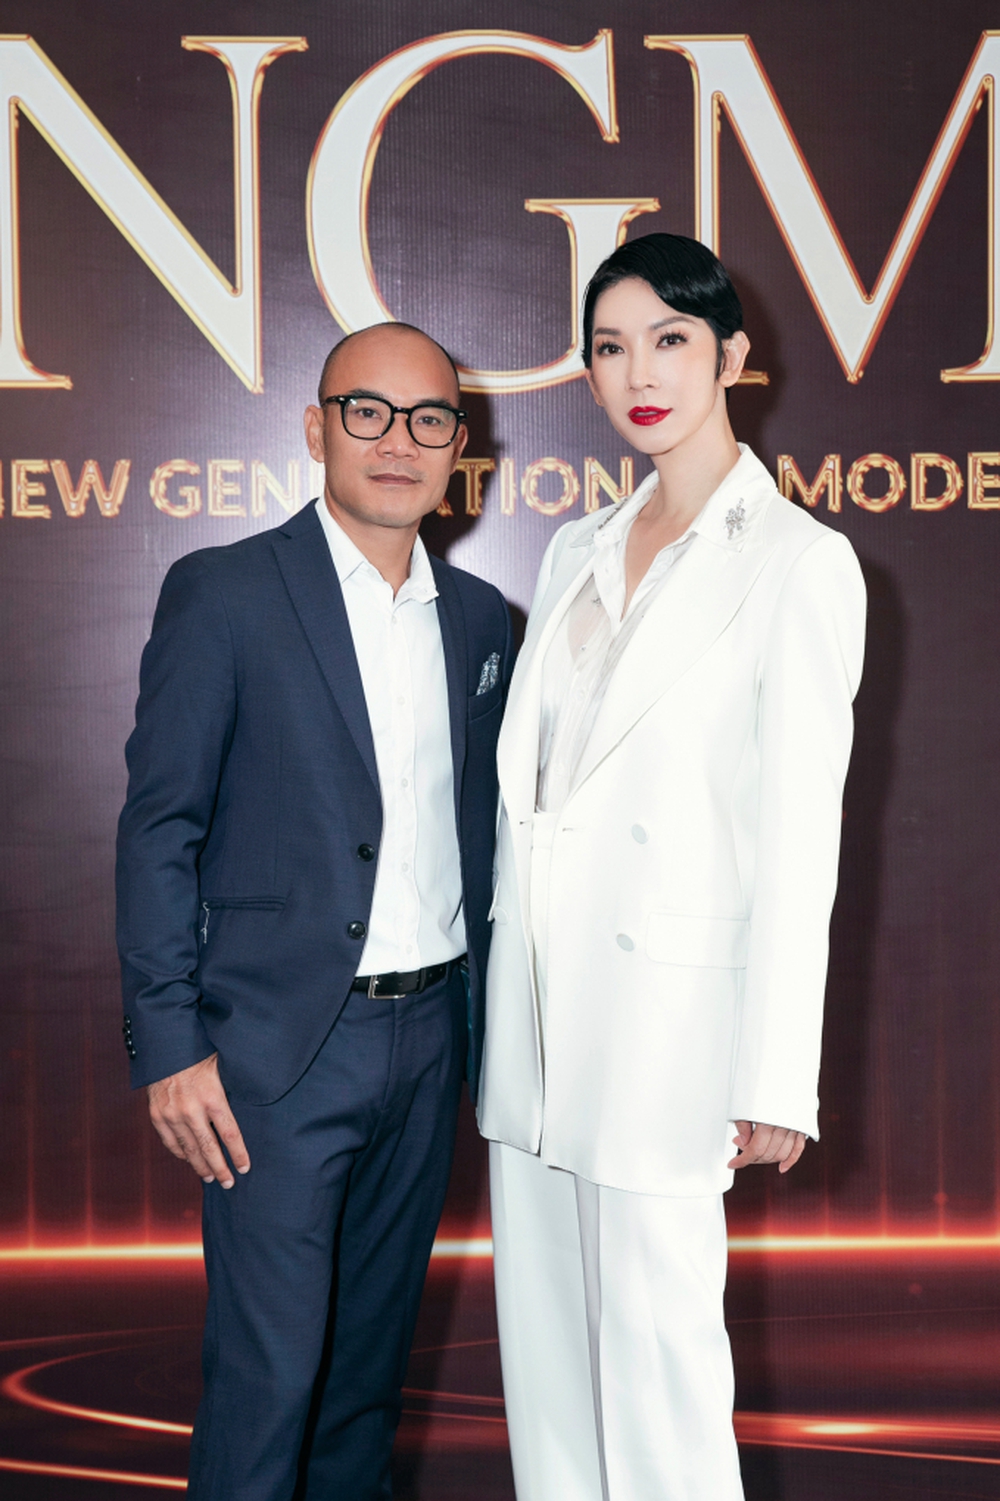 Siêu mẫu Xuân Lan làm phim tài liệu, sách ảnh thời trang về các thế hệ người mẫu Việt Nam - Ảnh 2.